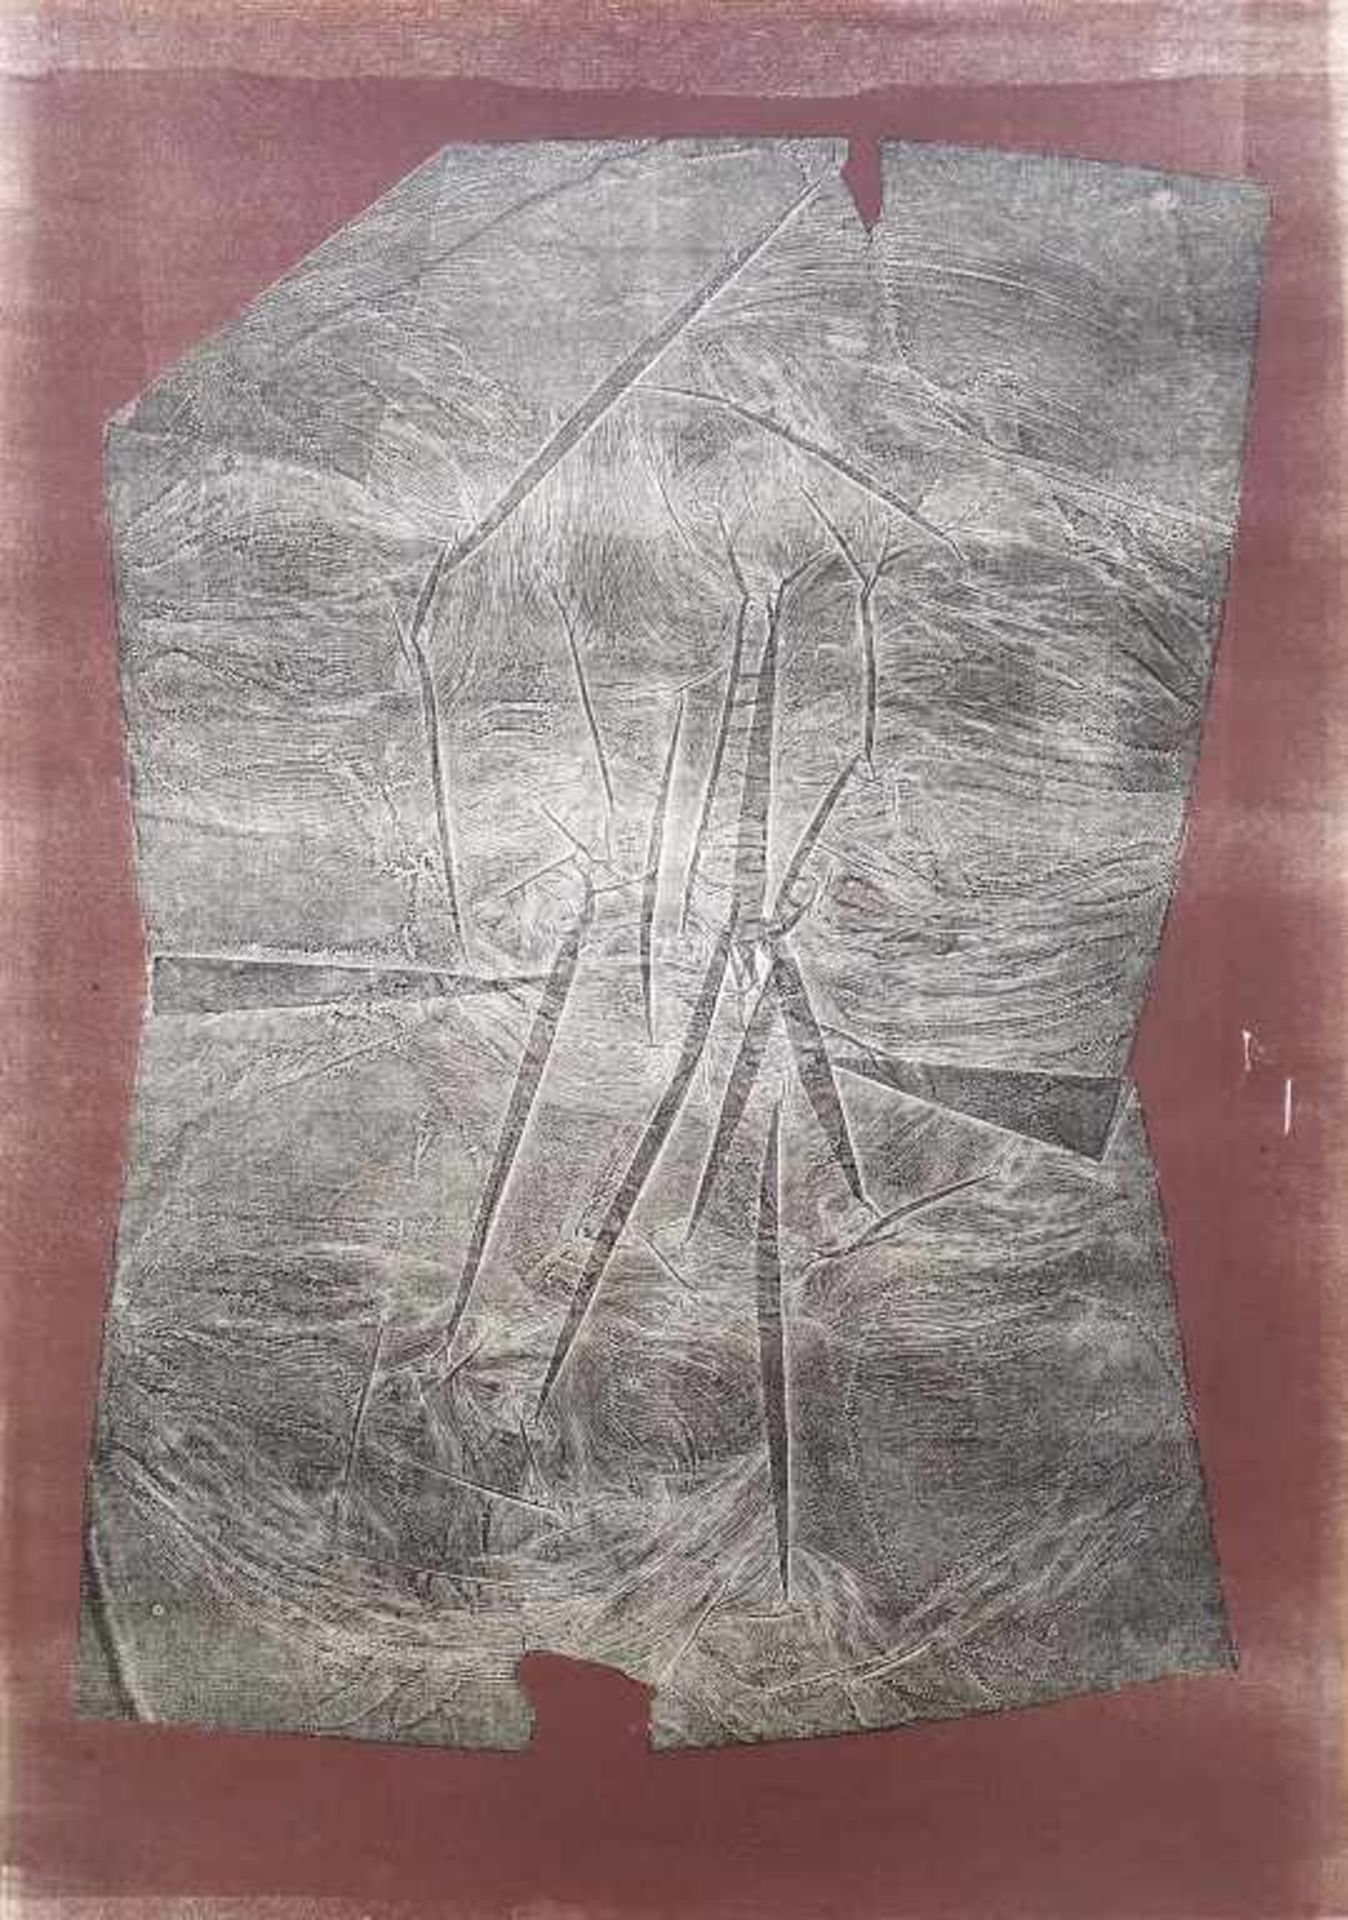 DENNHARDT, KLAUS: "Komposition auf Braun", 1984Monotypie auf Velin72,5 x 51,0 cmsigniert, datiert